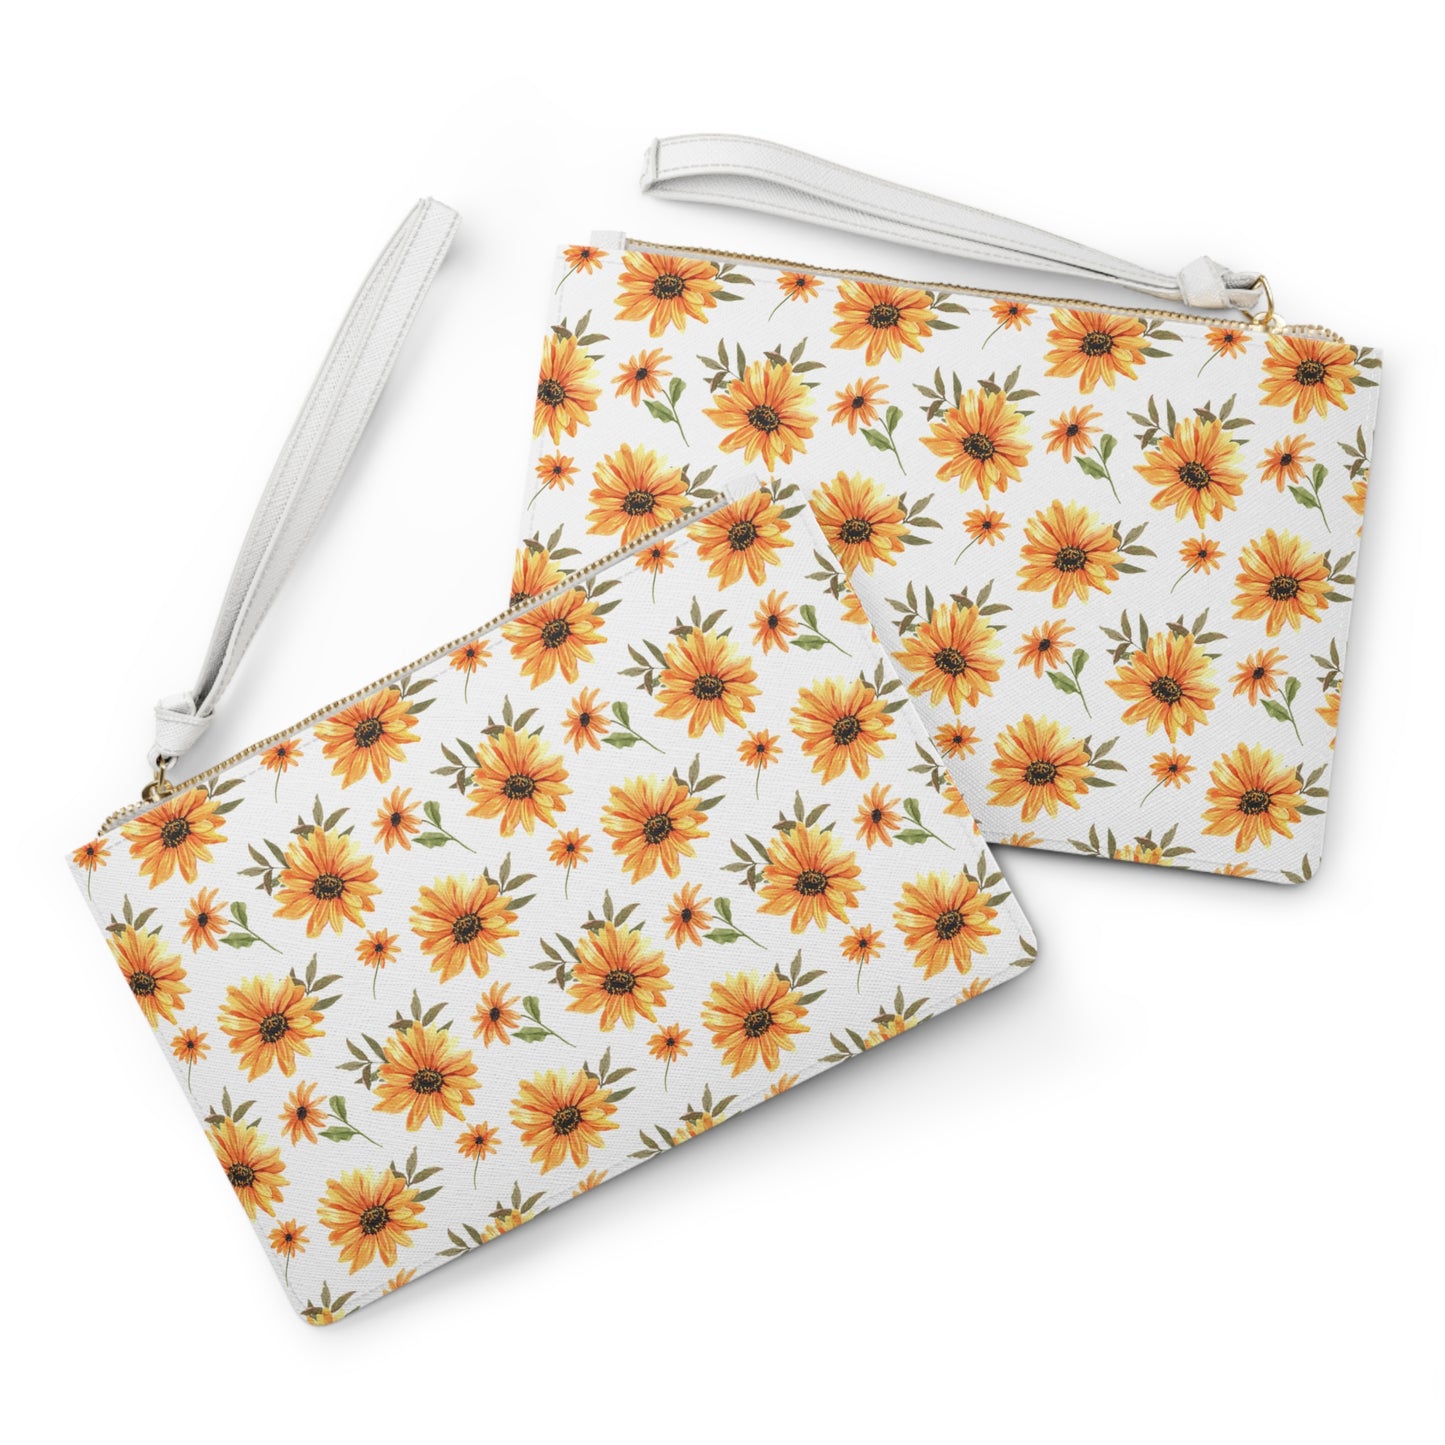 Bag- Clutch Bag- Flower design